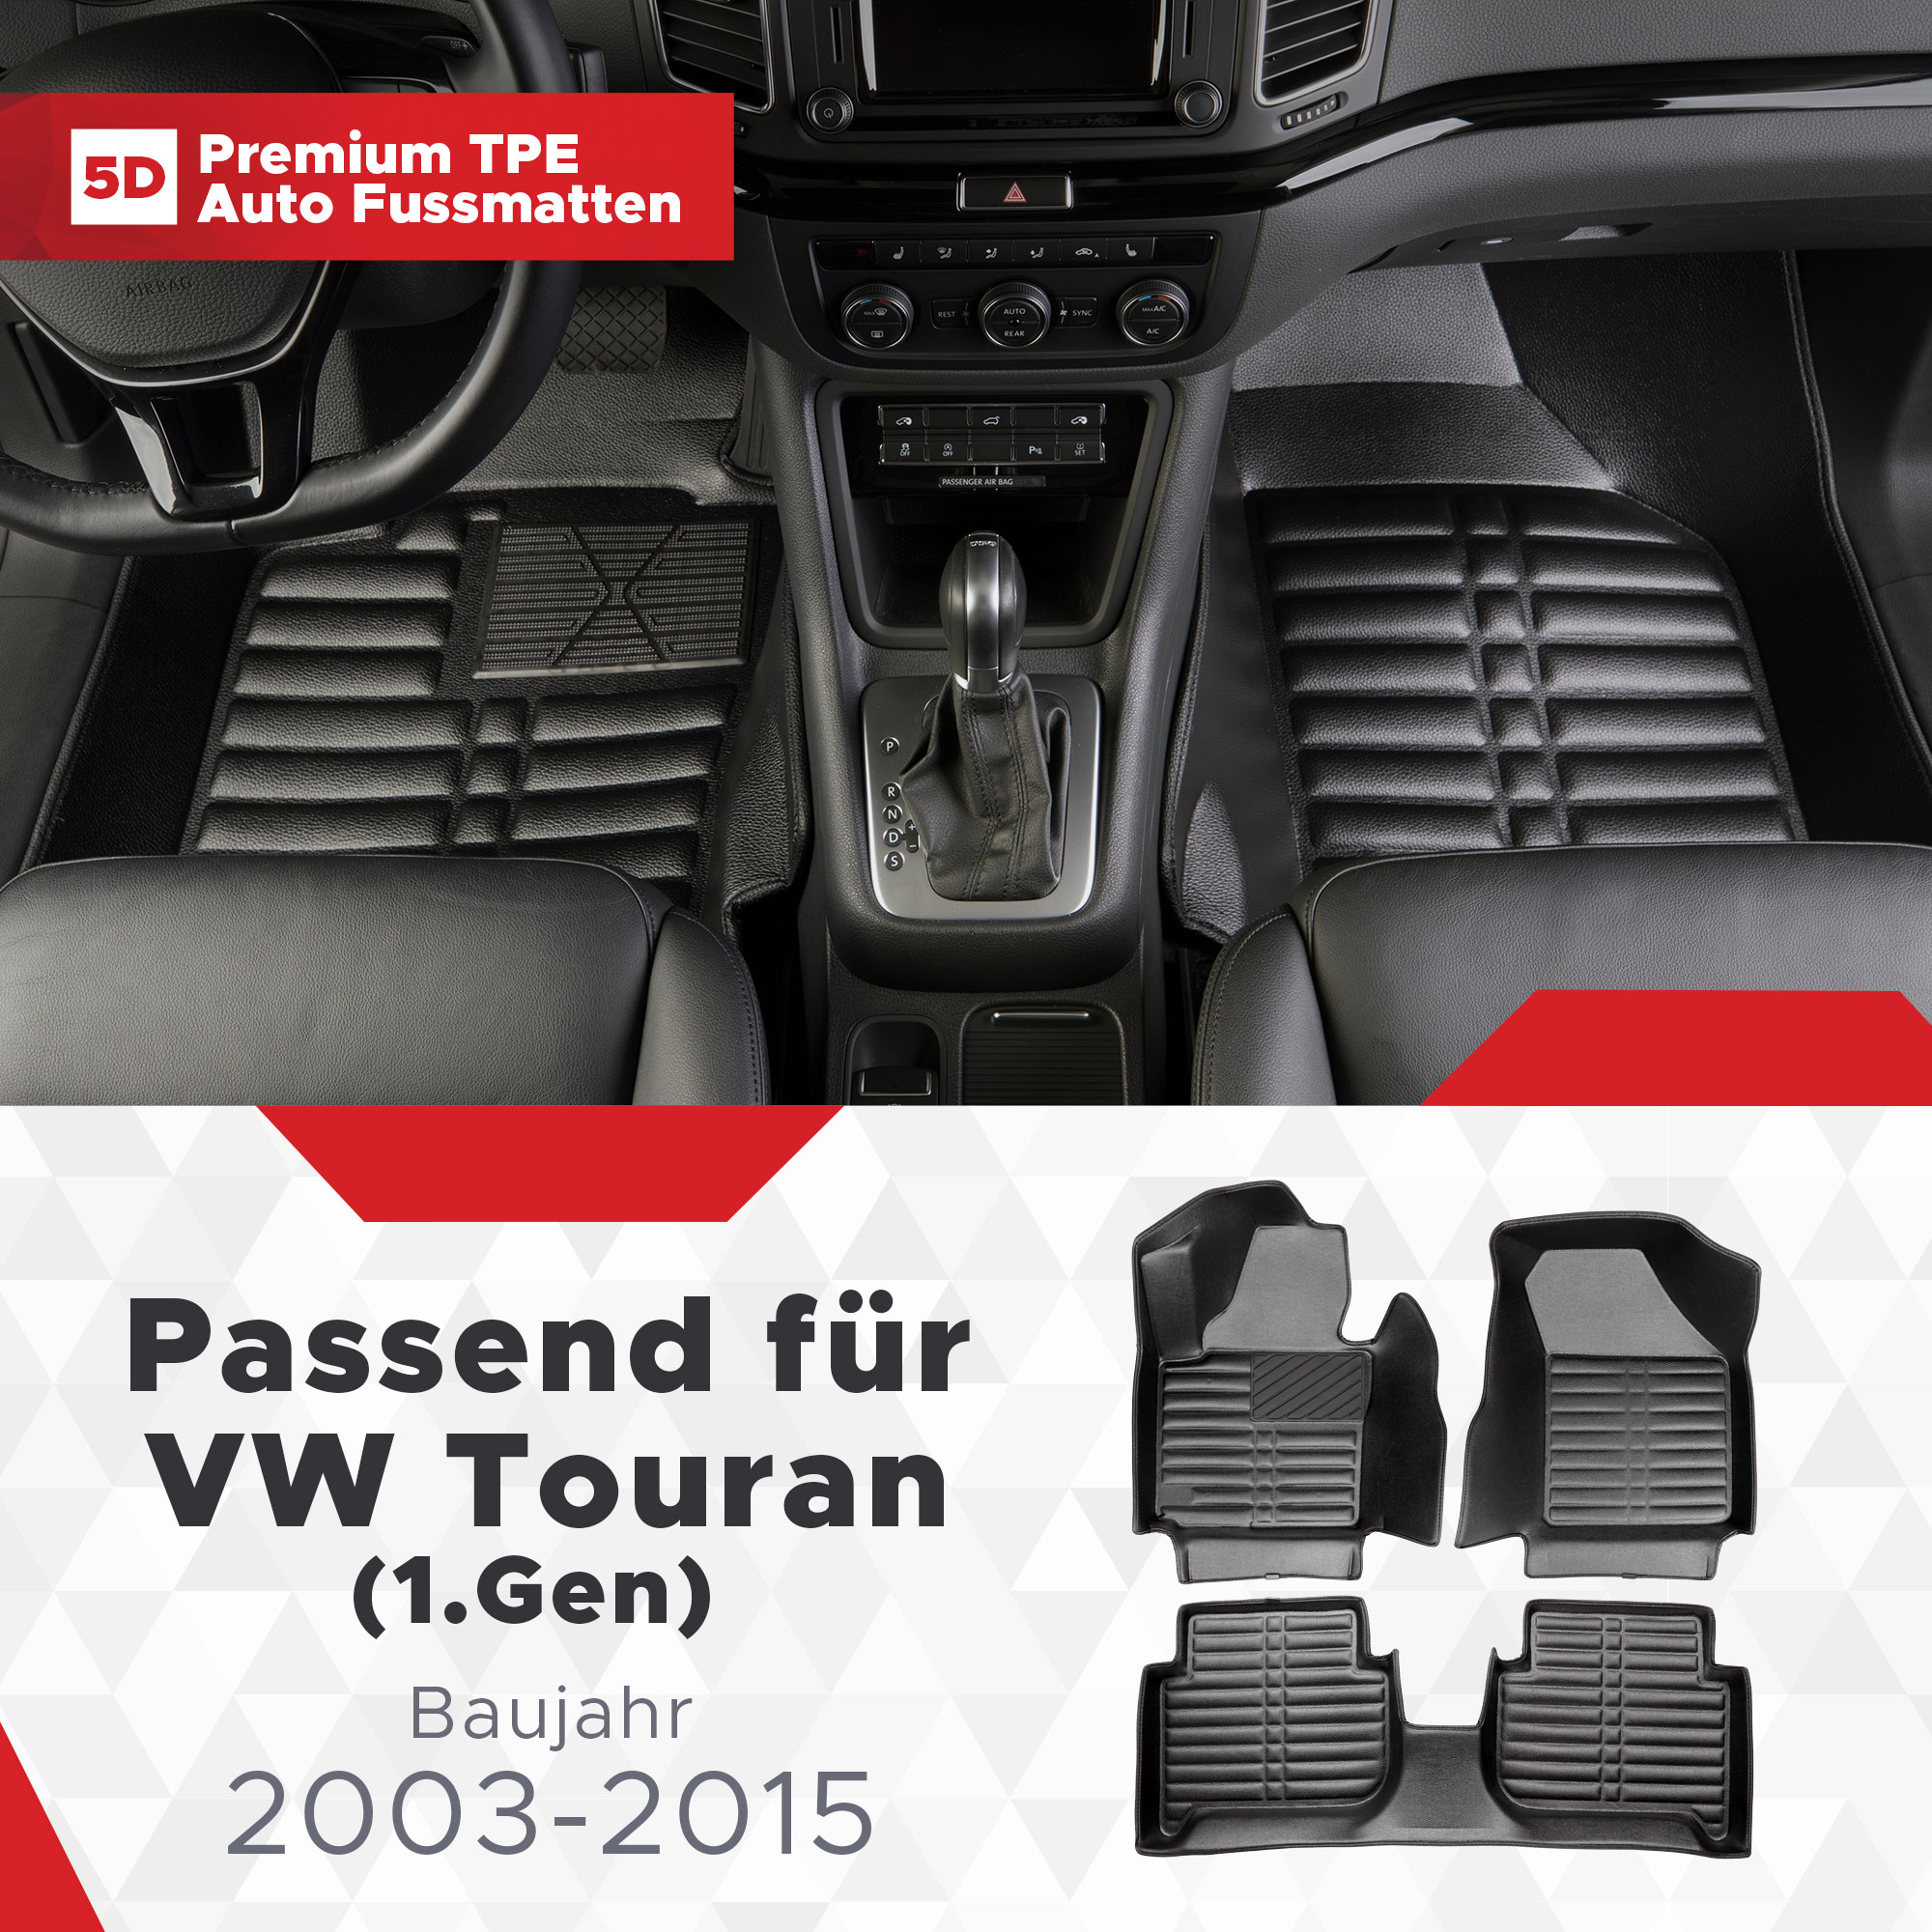 TPE Touran Bj 5D VW (1.Gen) 2003-2015 Fussmatten